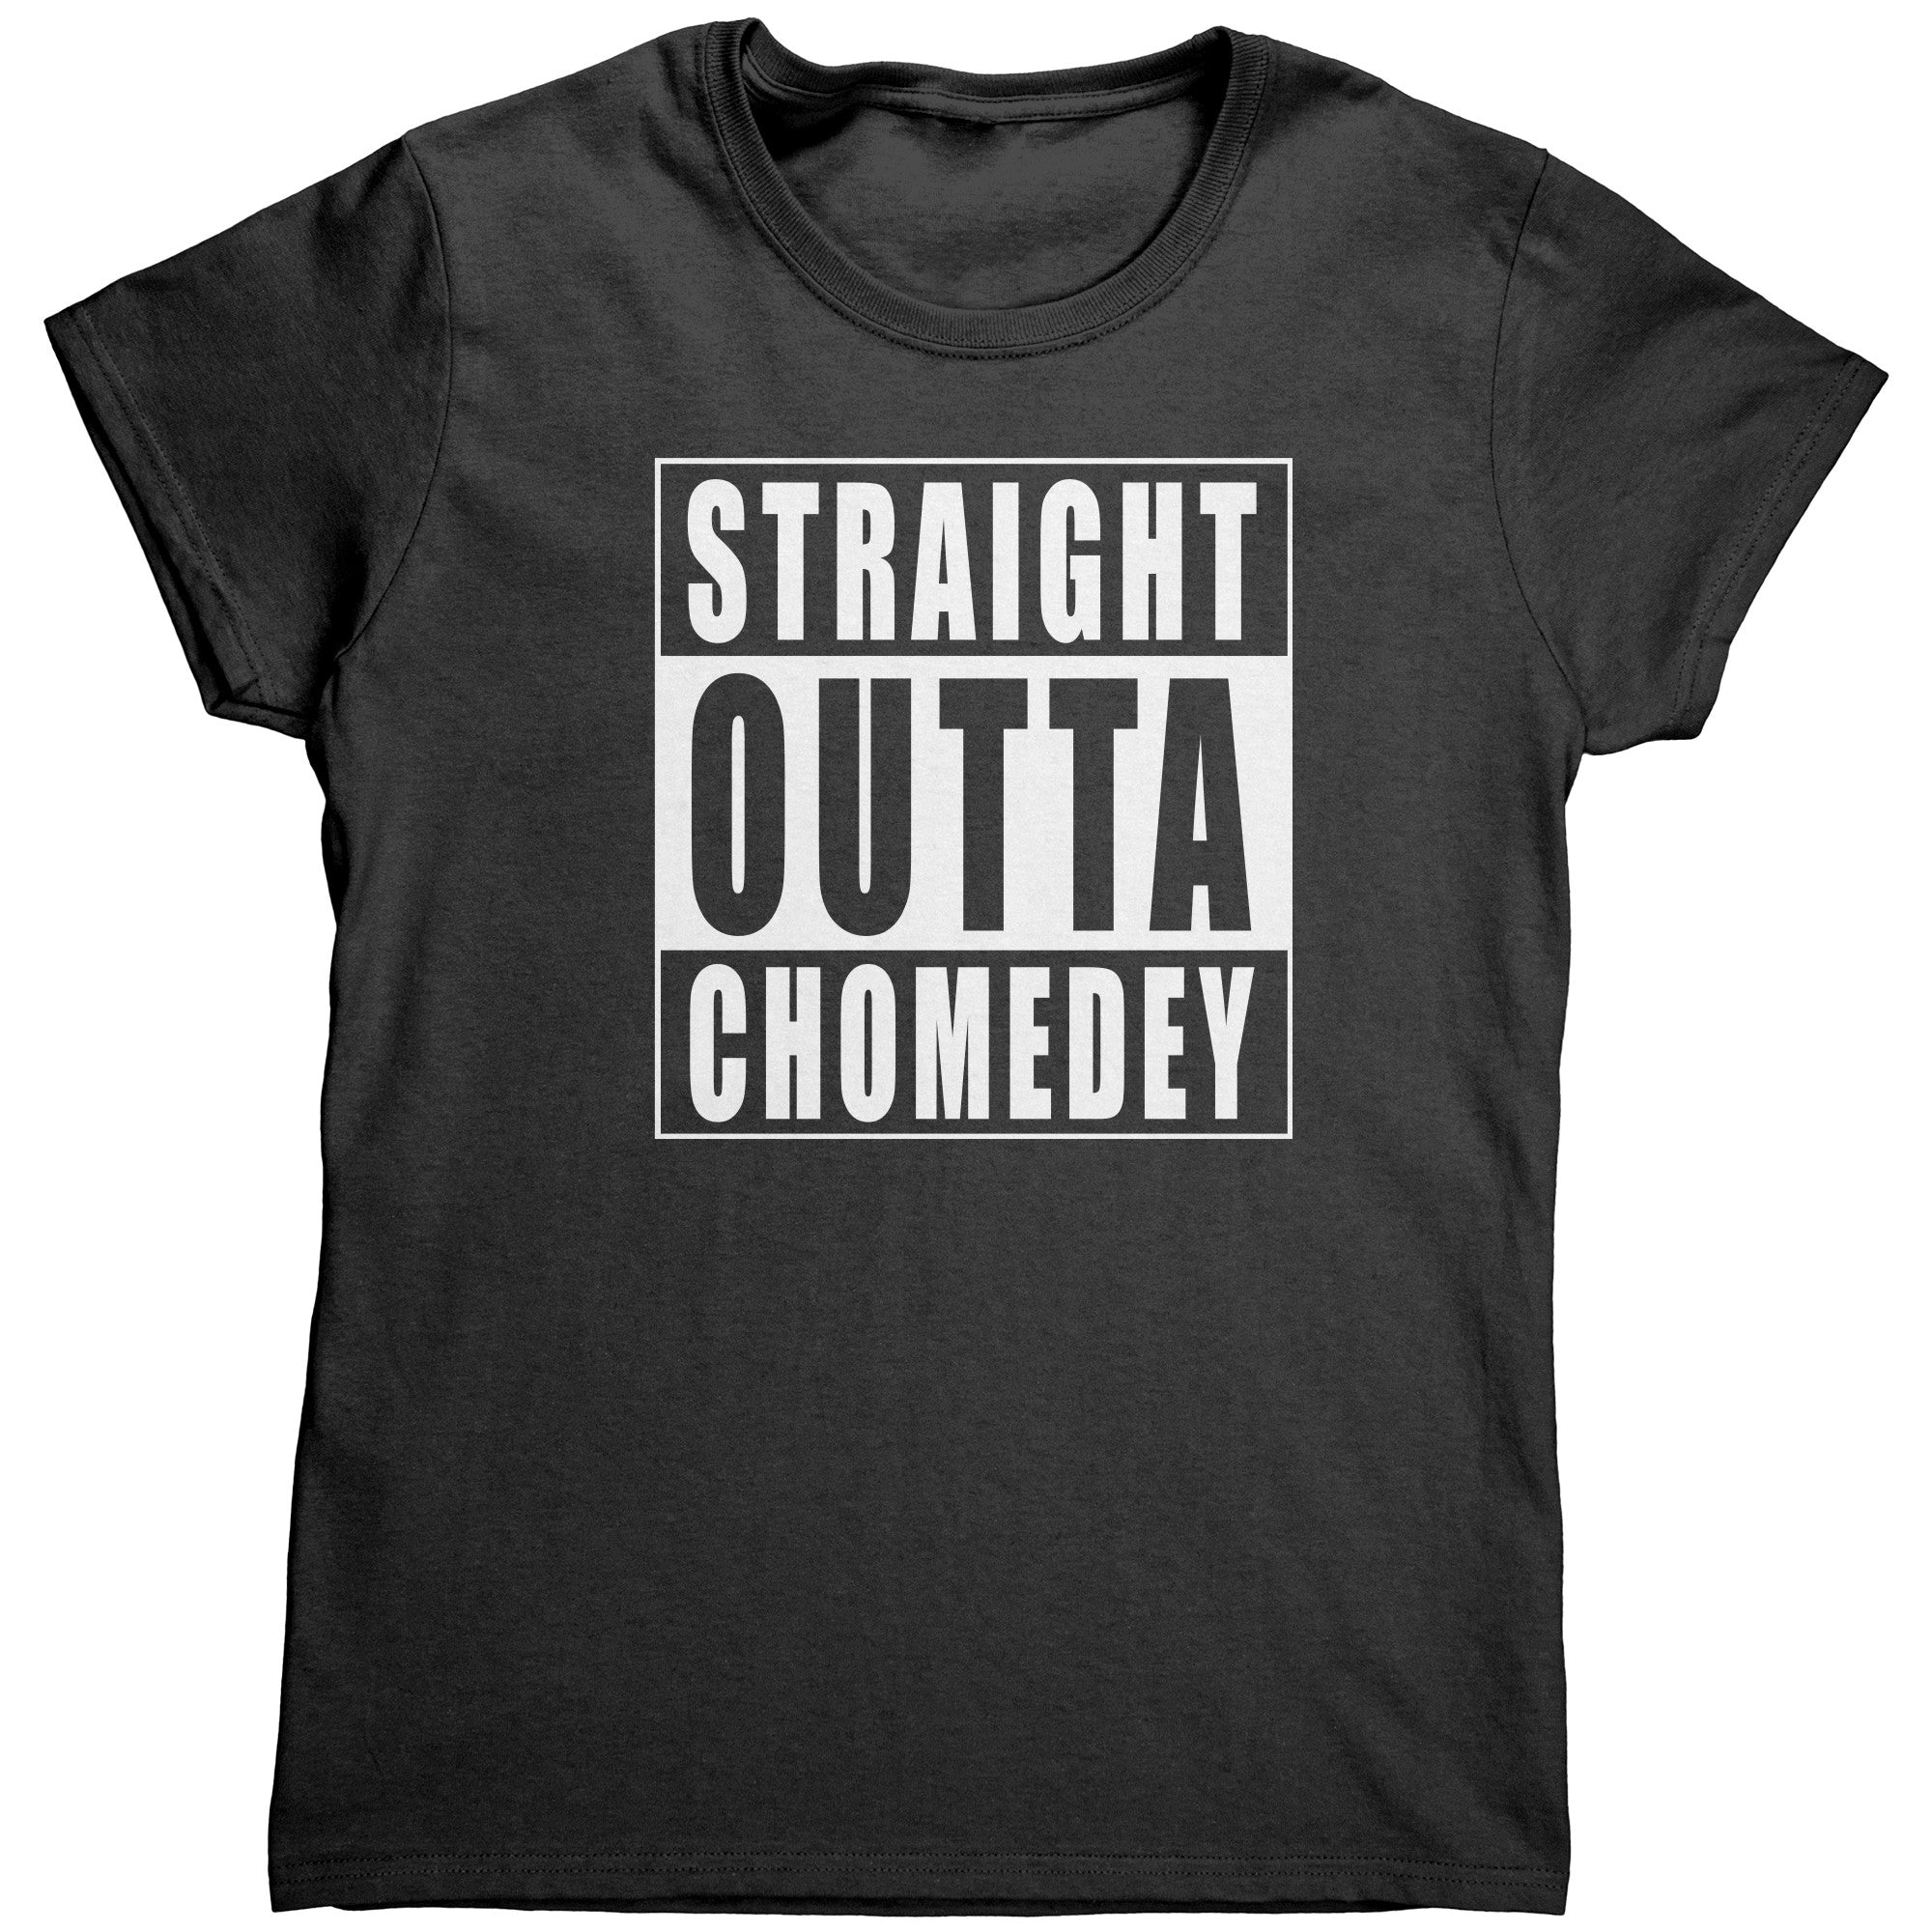 Chomedey